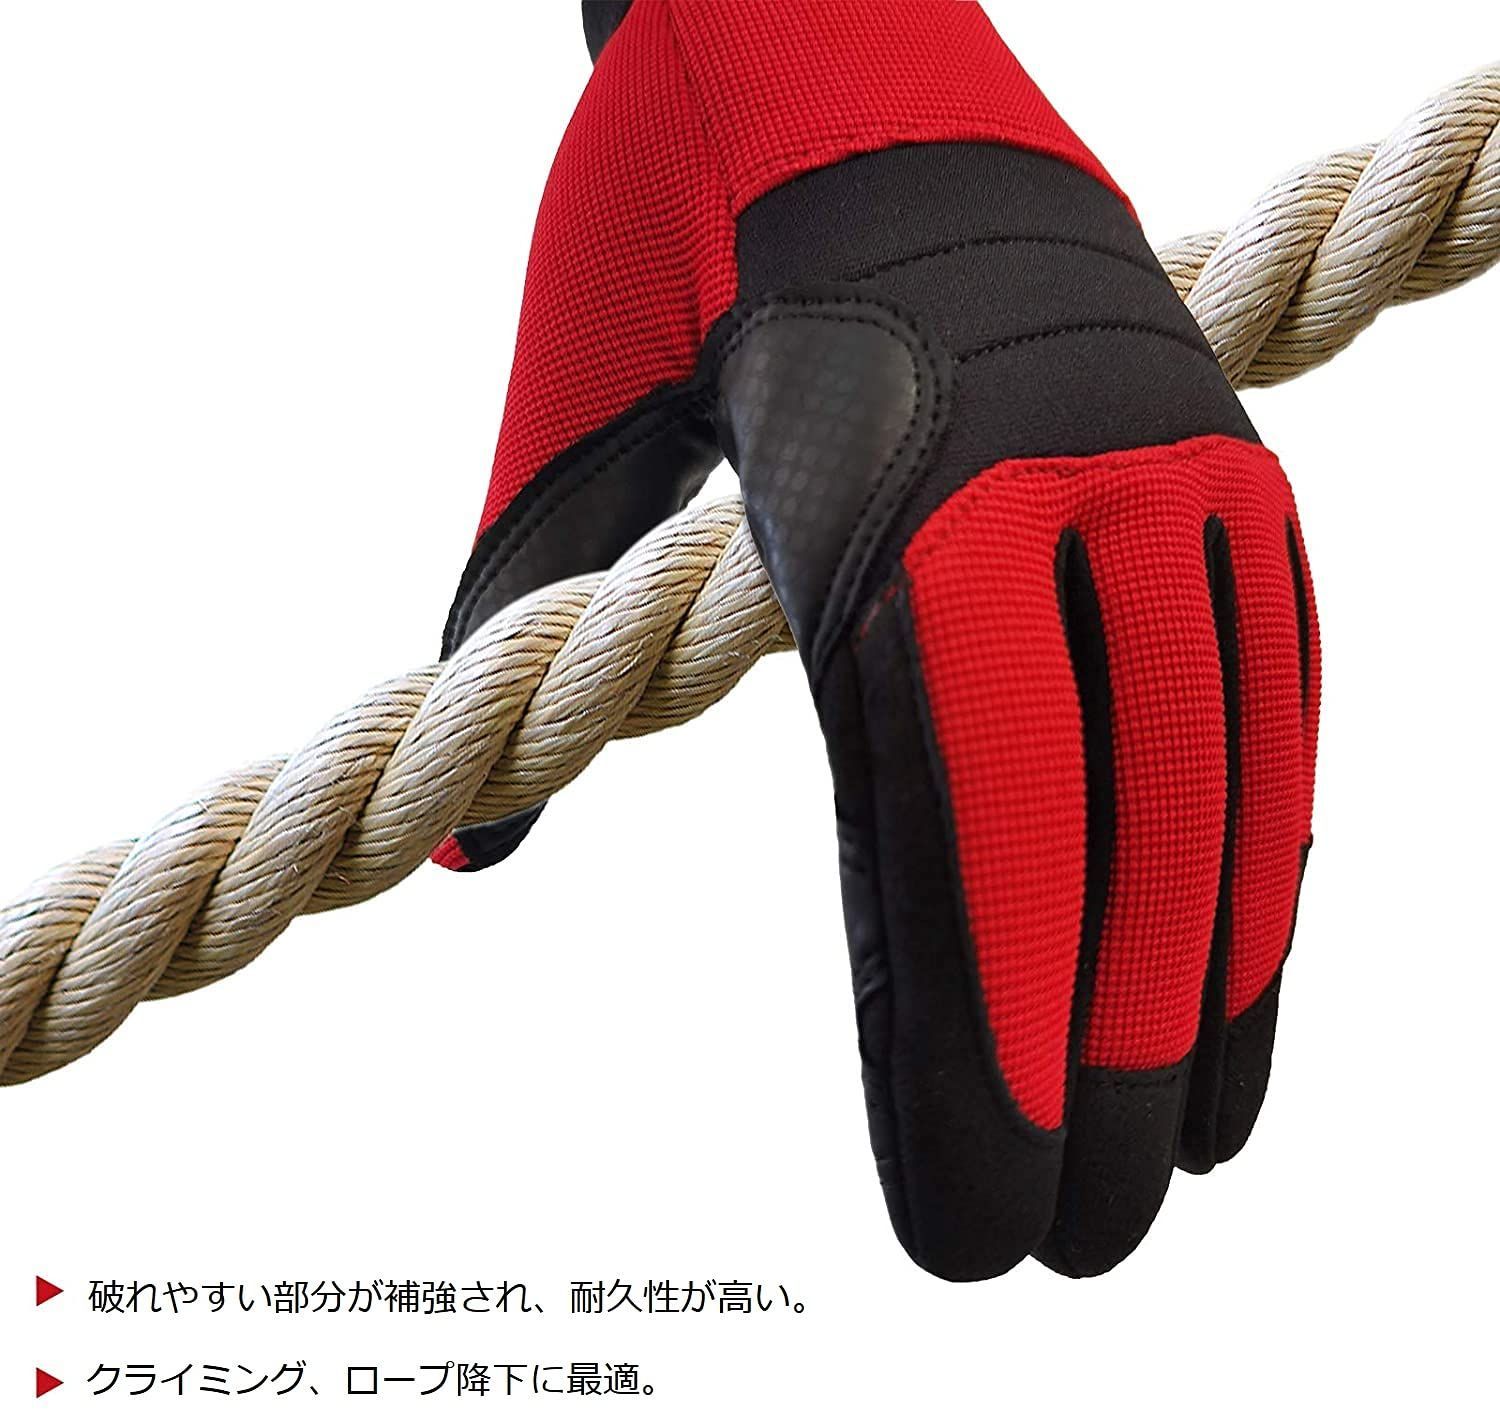 超激得SALE Intra-FIT 作業手袋 クライミング手袋 合成革 作業用手袋 背抜き手袋 クライミンググローブ レスキュー手袋 Mサイズ 